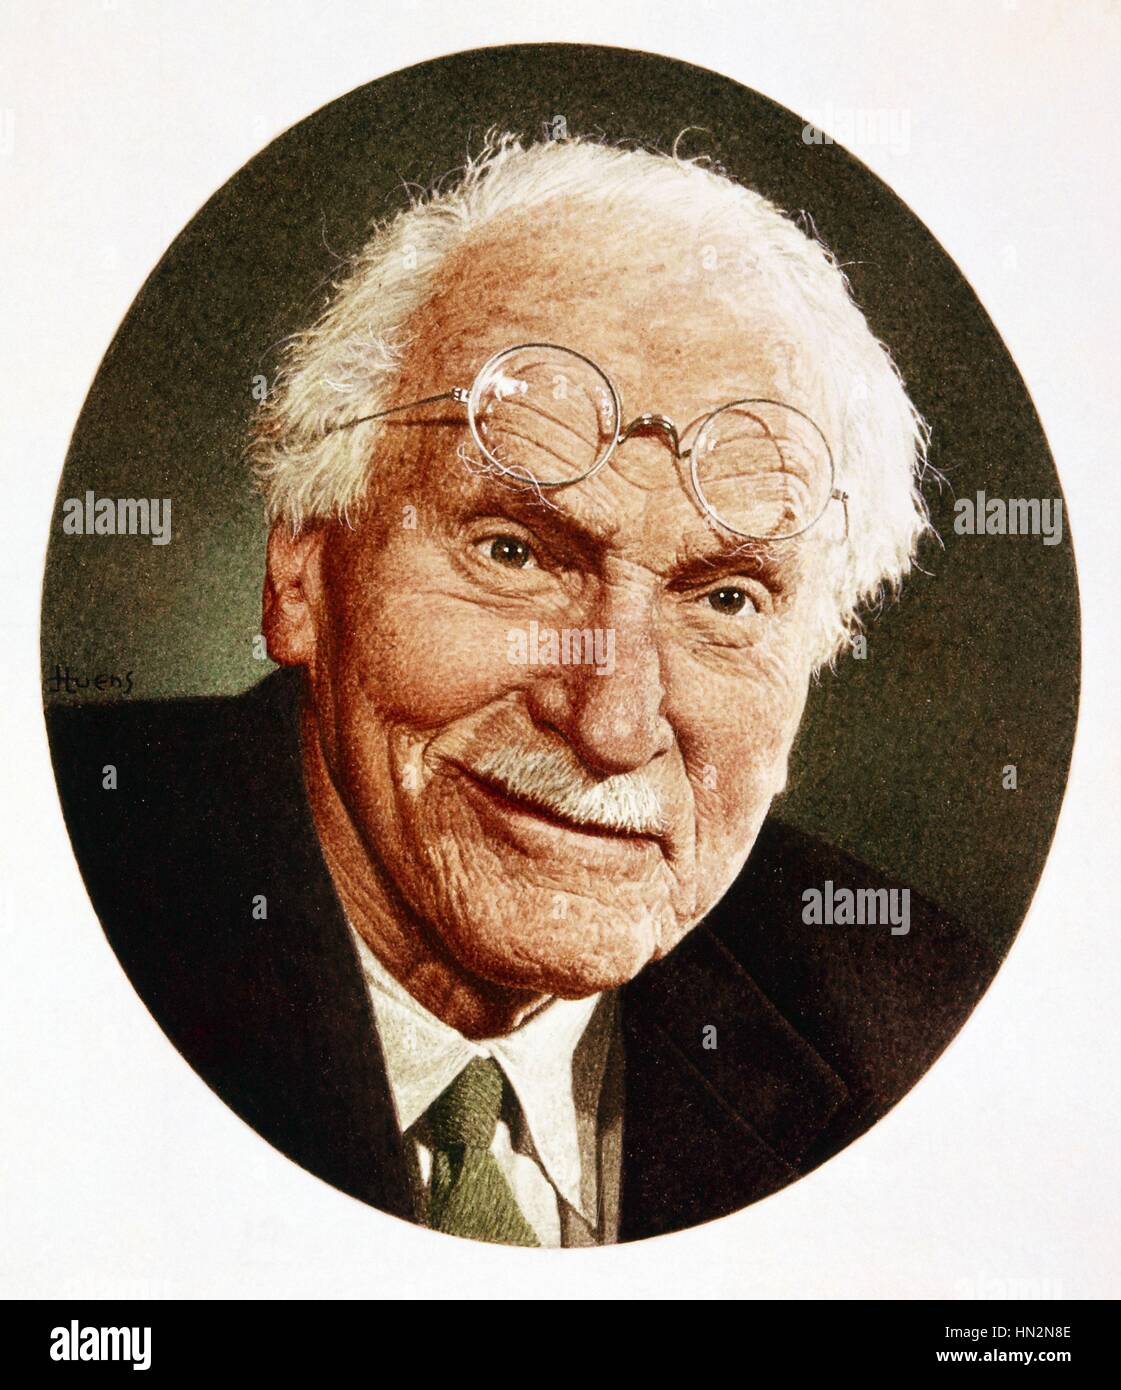 Retrato del psiquiatra y psicólogo suizo Carl Gustav Jung (1875-1961) siglo xx Foto de stock